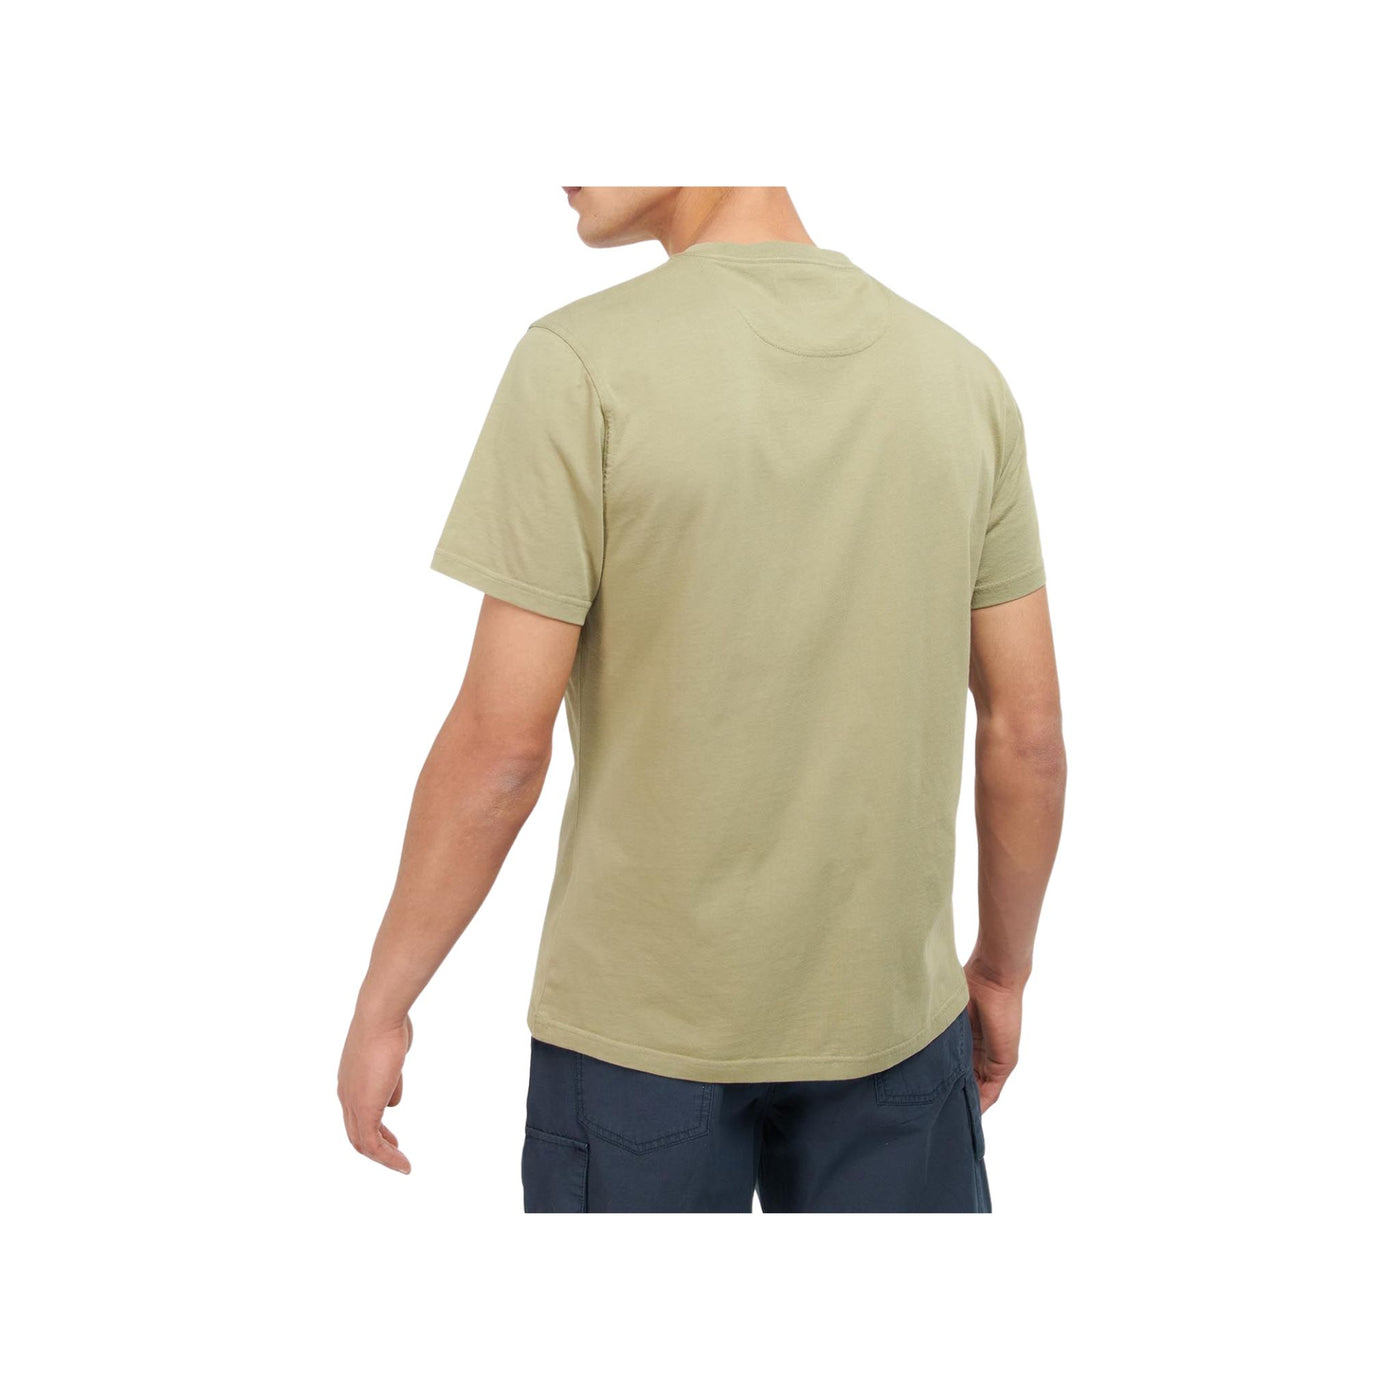 T-shirt Uomo in cotone a tinta unita